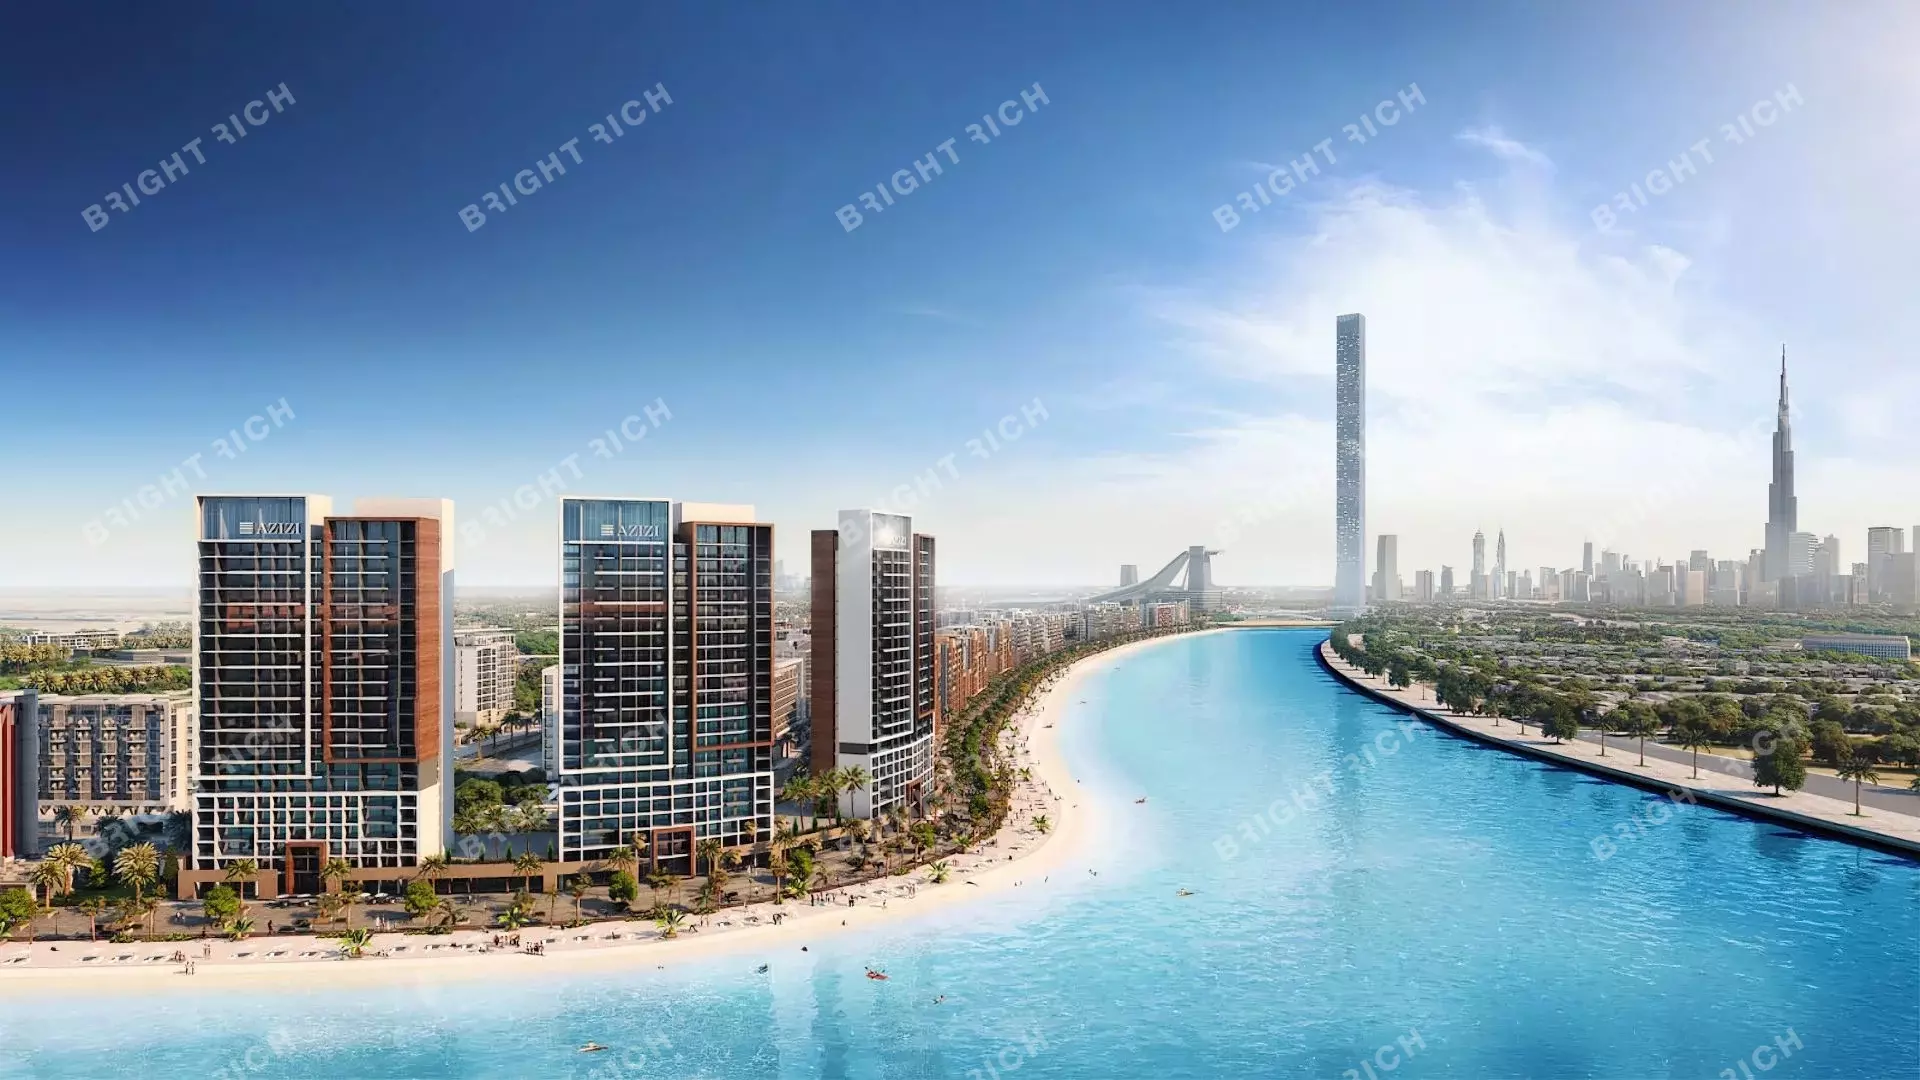 Azizi Riviera Building 25, apart complex in Dubai - 0